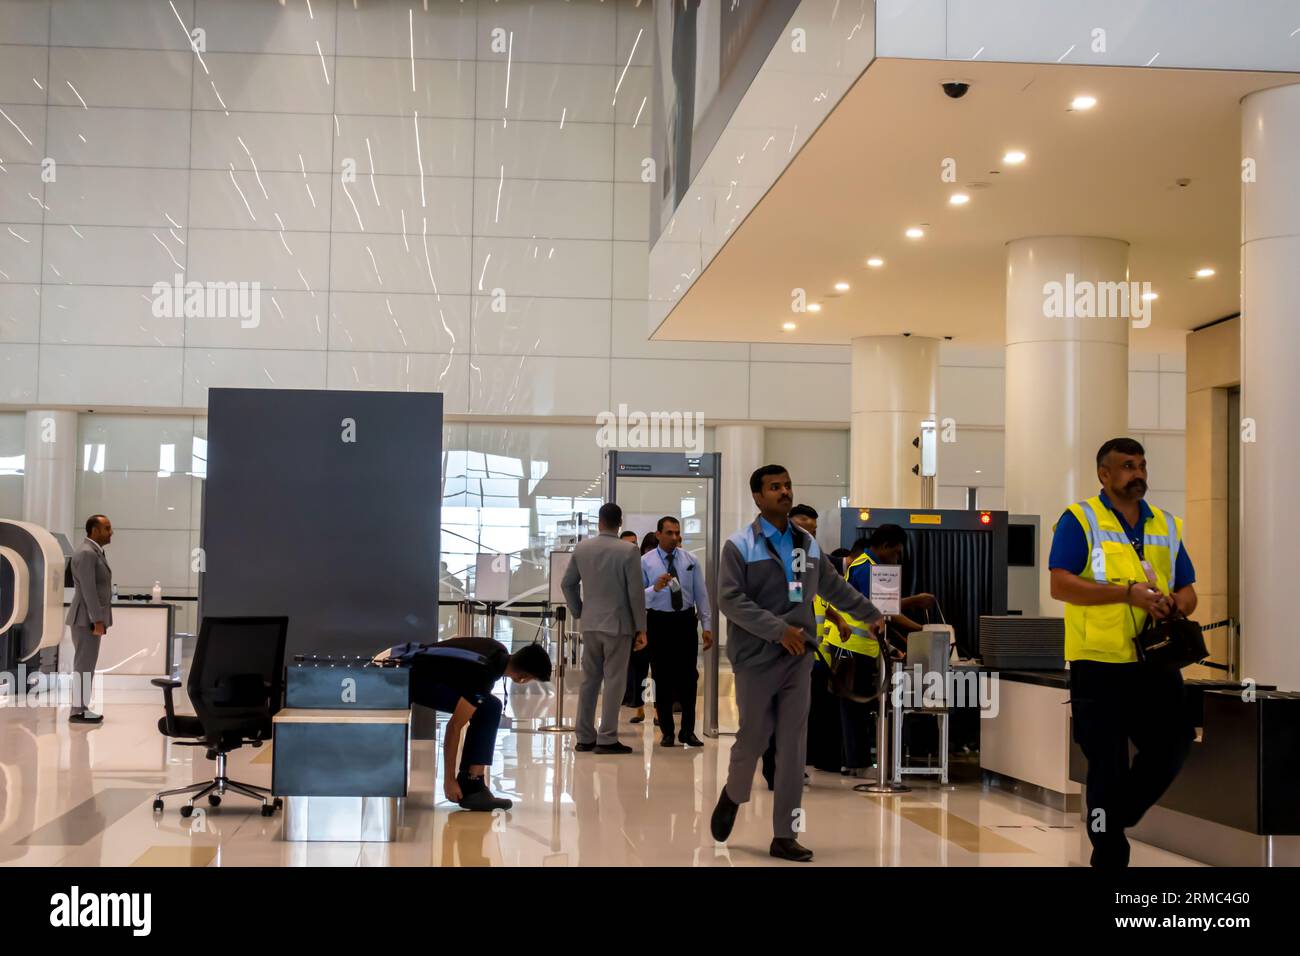 Contrôle de sécurité à l'aéroport. Contrôle de sécurité des bagages à main avant l'entrée des portes, enregistrement des bagages à l'aéroport de Dubaï Moyen-Orient à l'aéroport. Banque D'Images